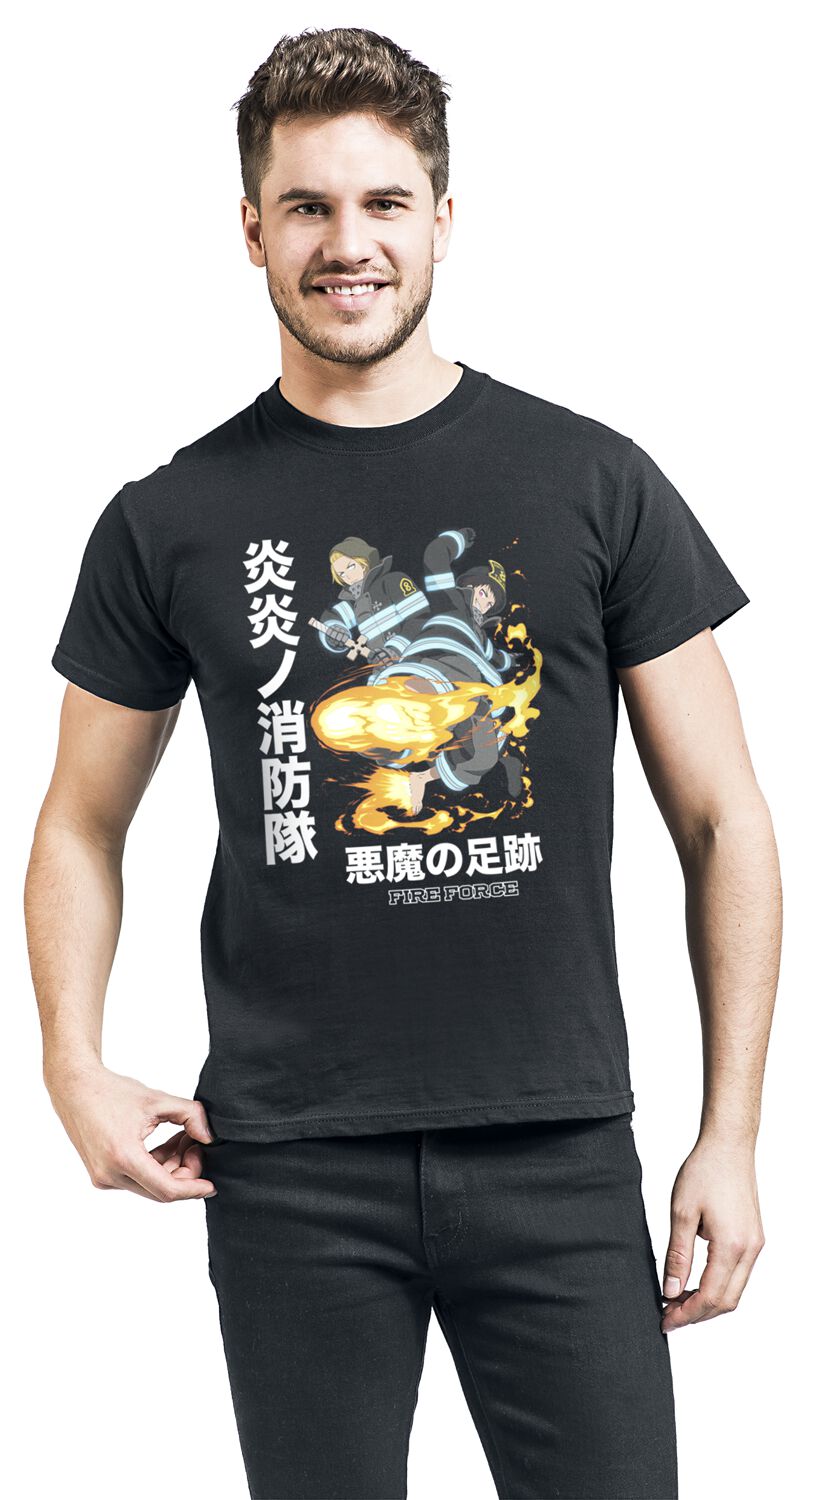 Fire Force - Anime T-Shirt - Devil Footprints - S bis M - für Männer - Größe S - schwarz  - Lizenzierter Fanartikel von Fire Force